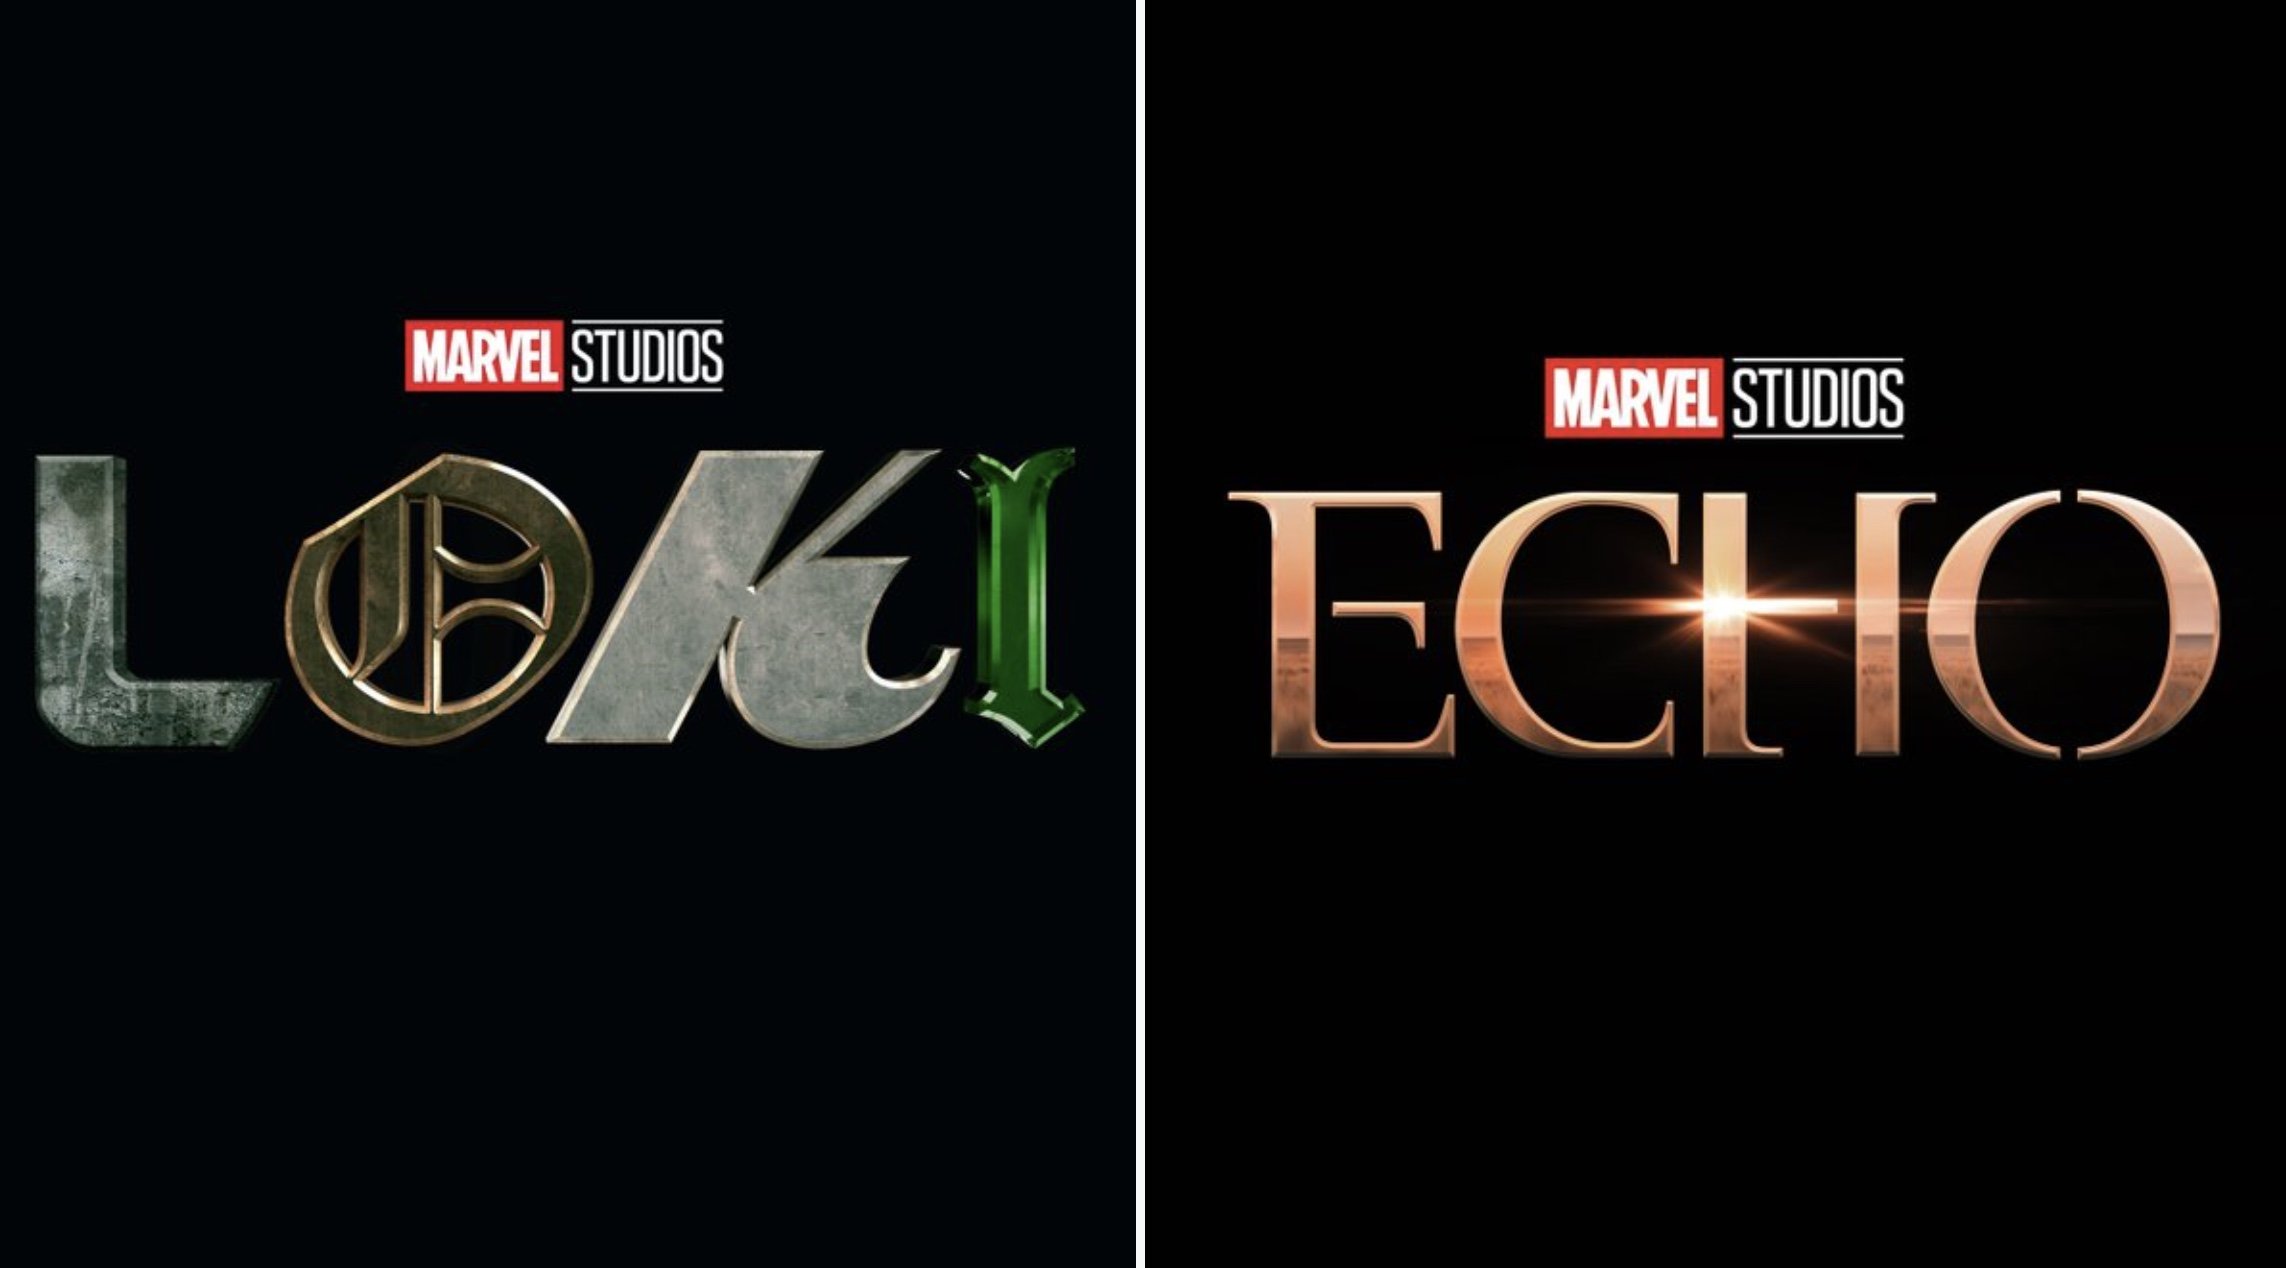 Loki' Season 2 Full Episode Release Schedule